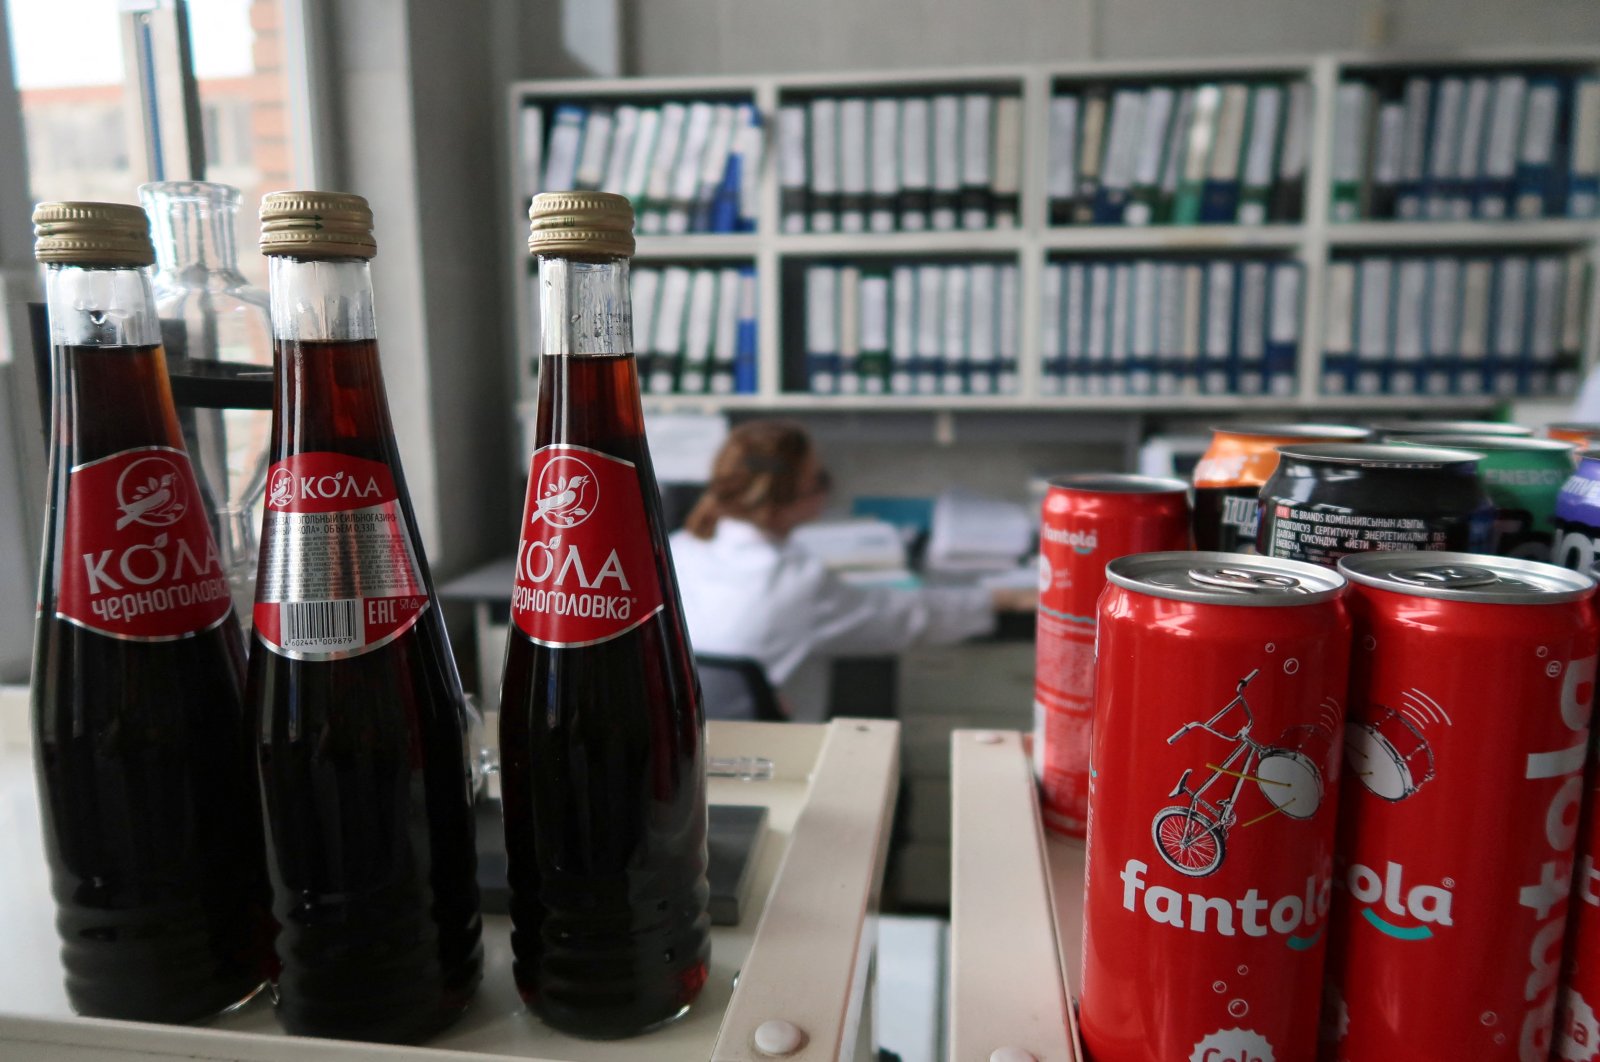 Merek Rusia menargetkan 50% pasar untuk mengisi celah yang ditinggalkan oleh Coke, Pepsi